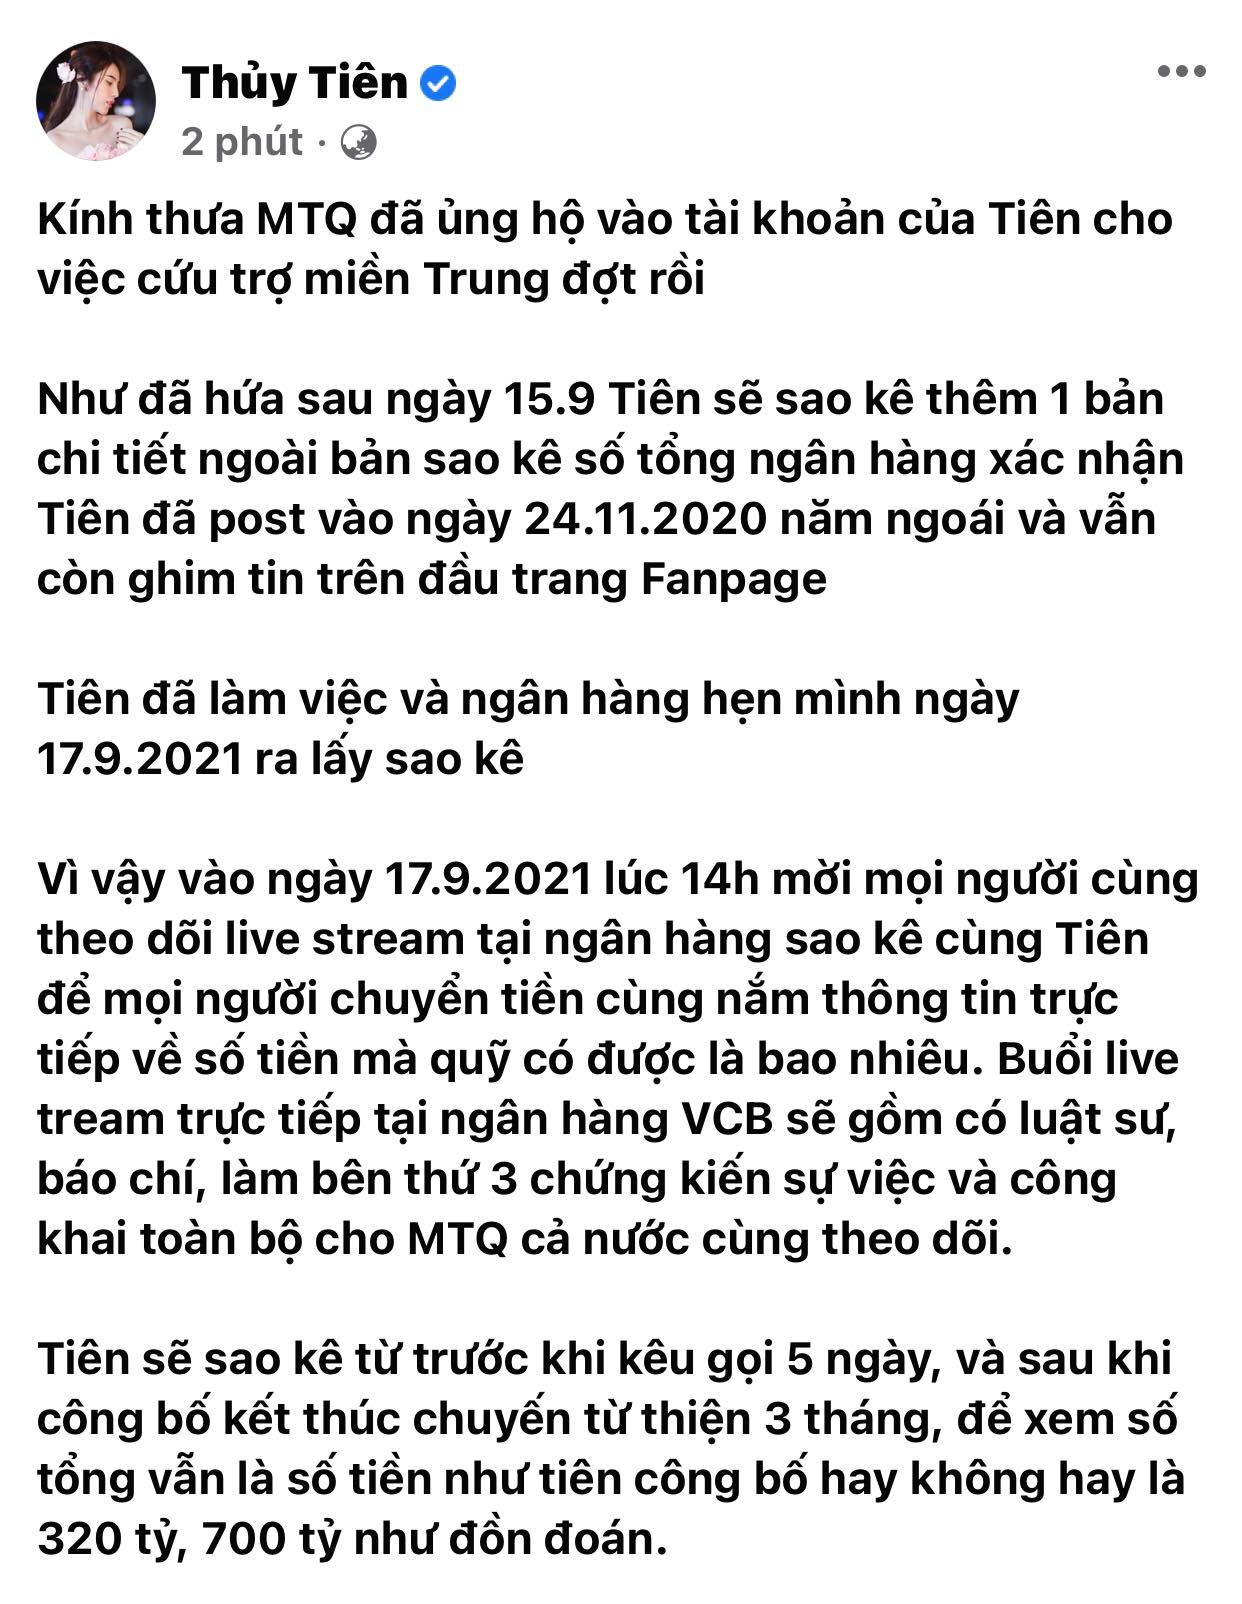 Thuy-tien-chinh-thuc-tung-sao-ke-178-ty-da-keu-goi-thong-bao-ngay-livestream-sao-ke-tai-ngan-hang